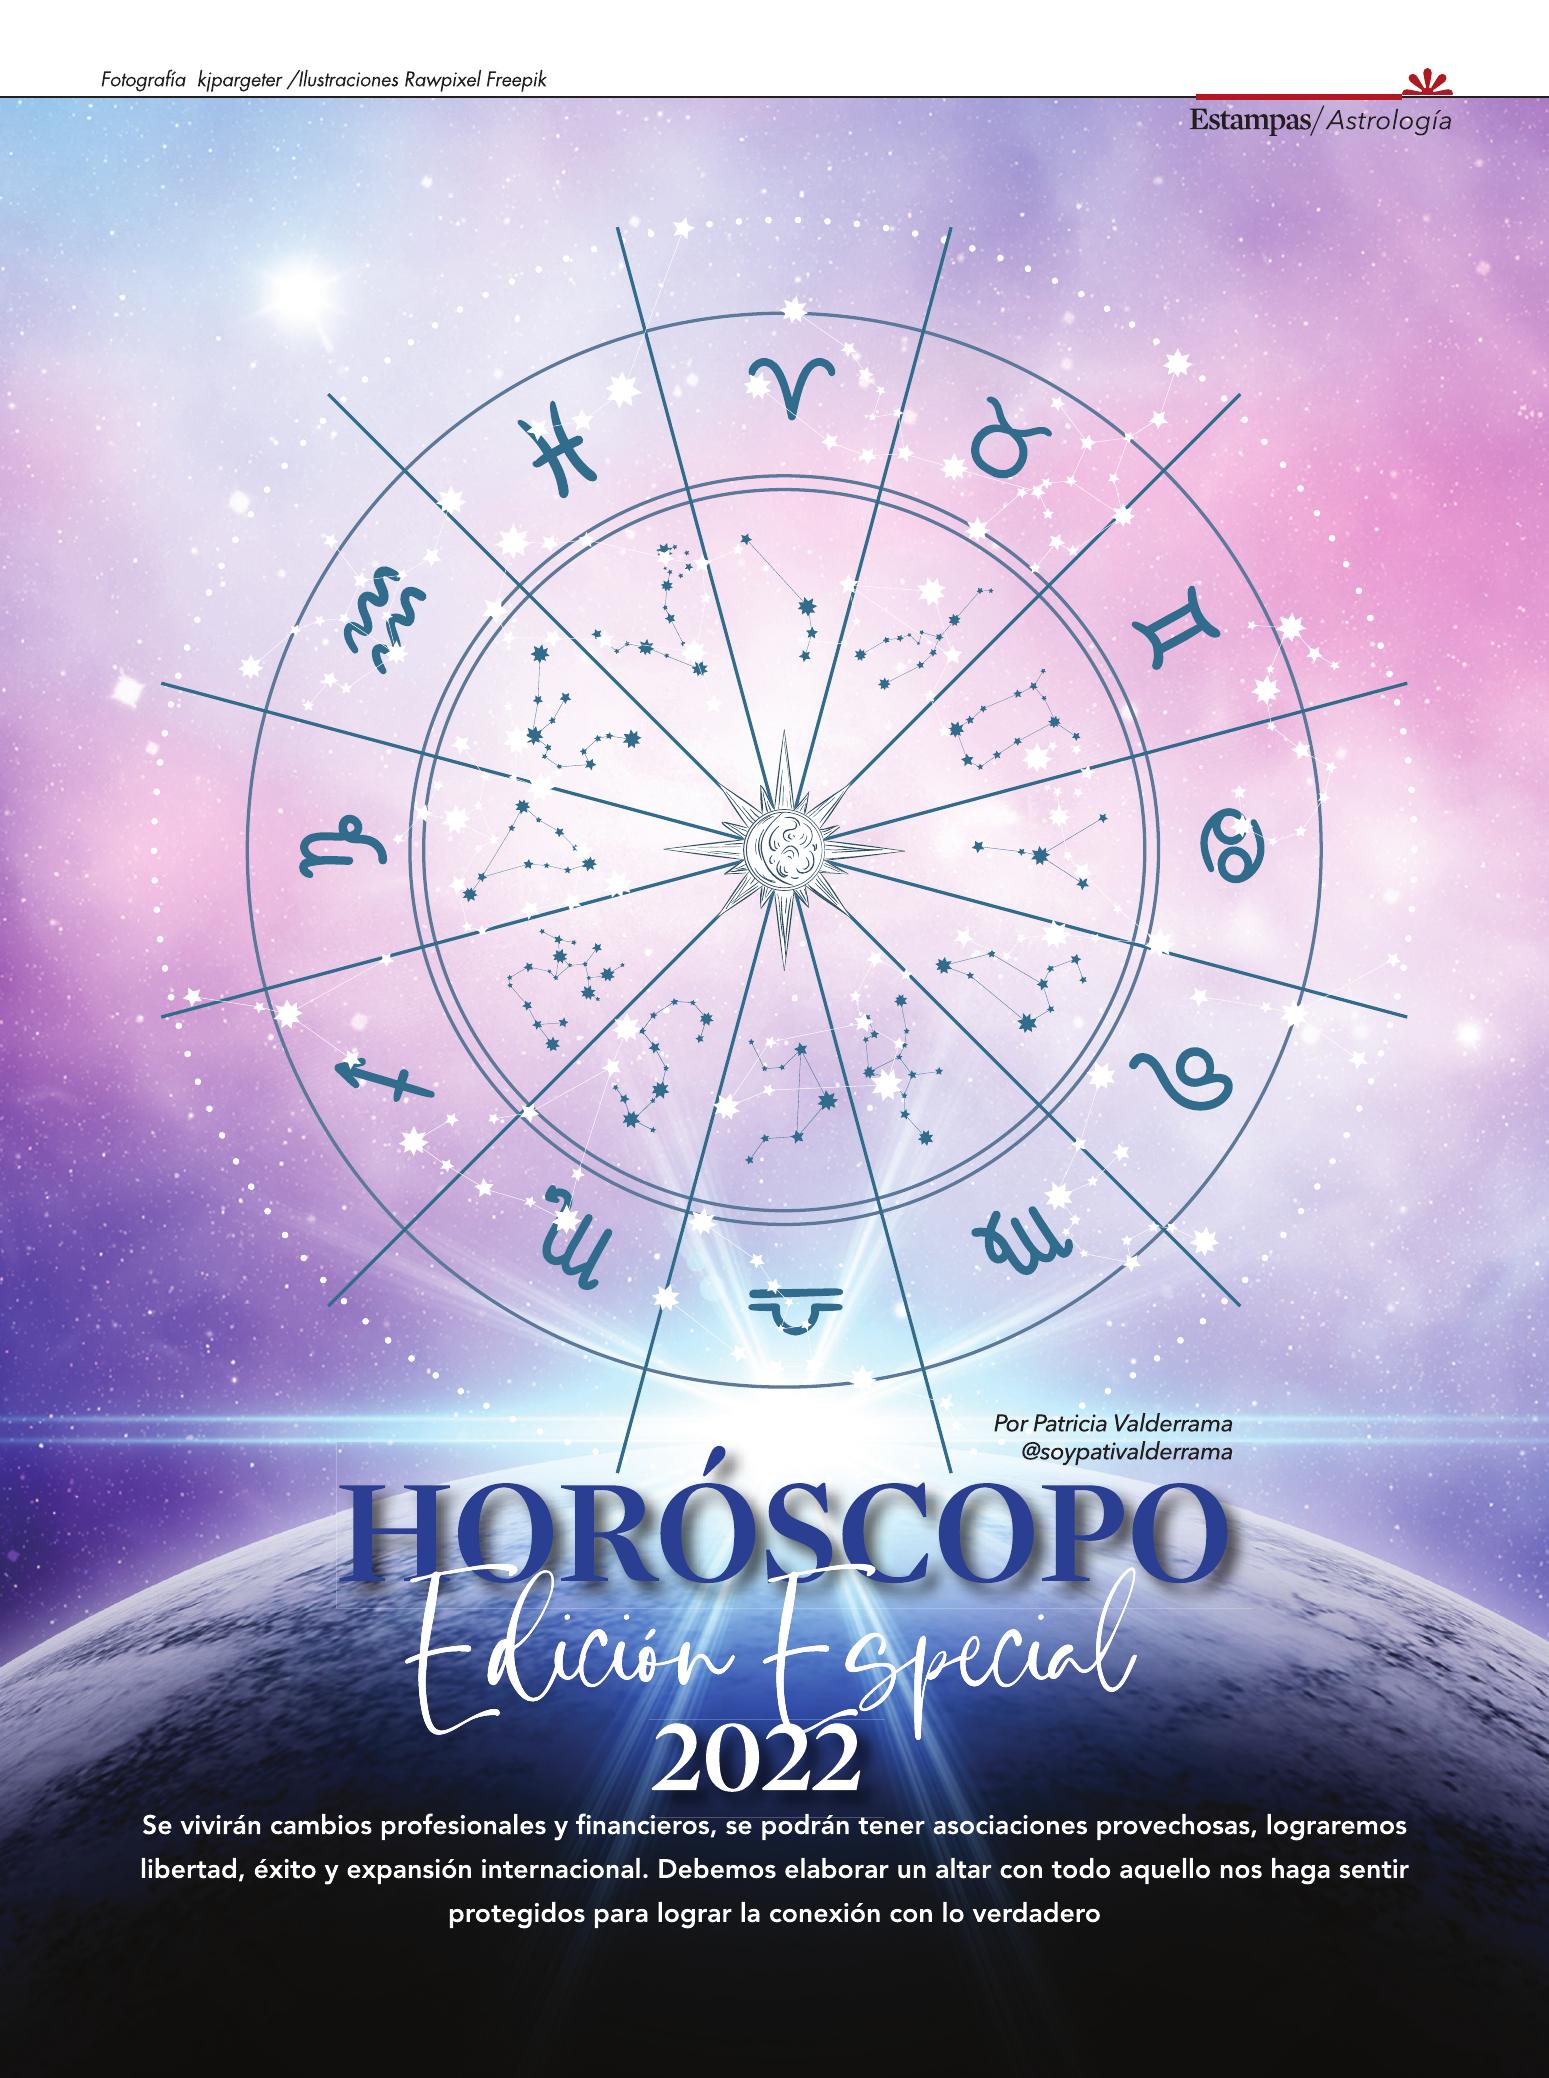 25-REV Horoscopo Edicion Especial 2022